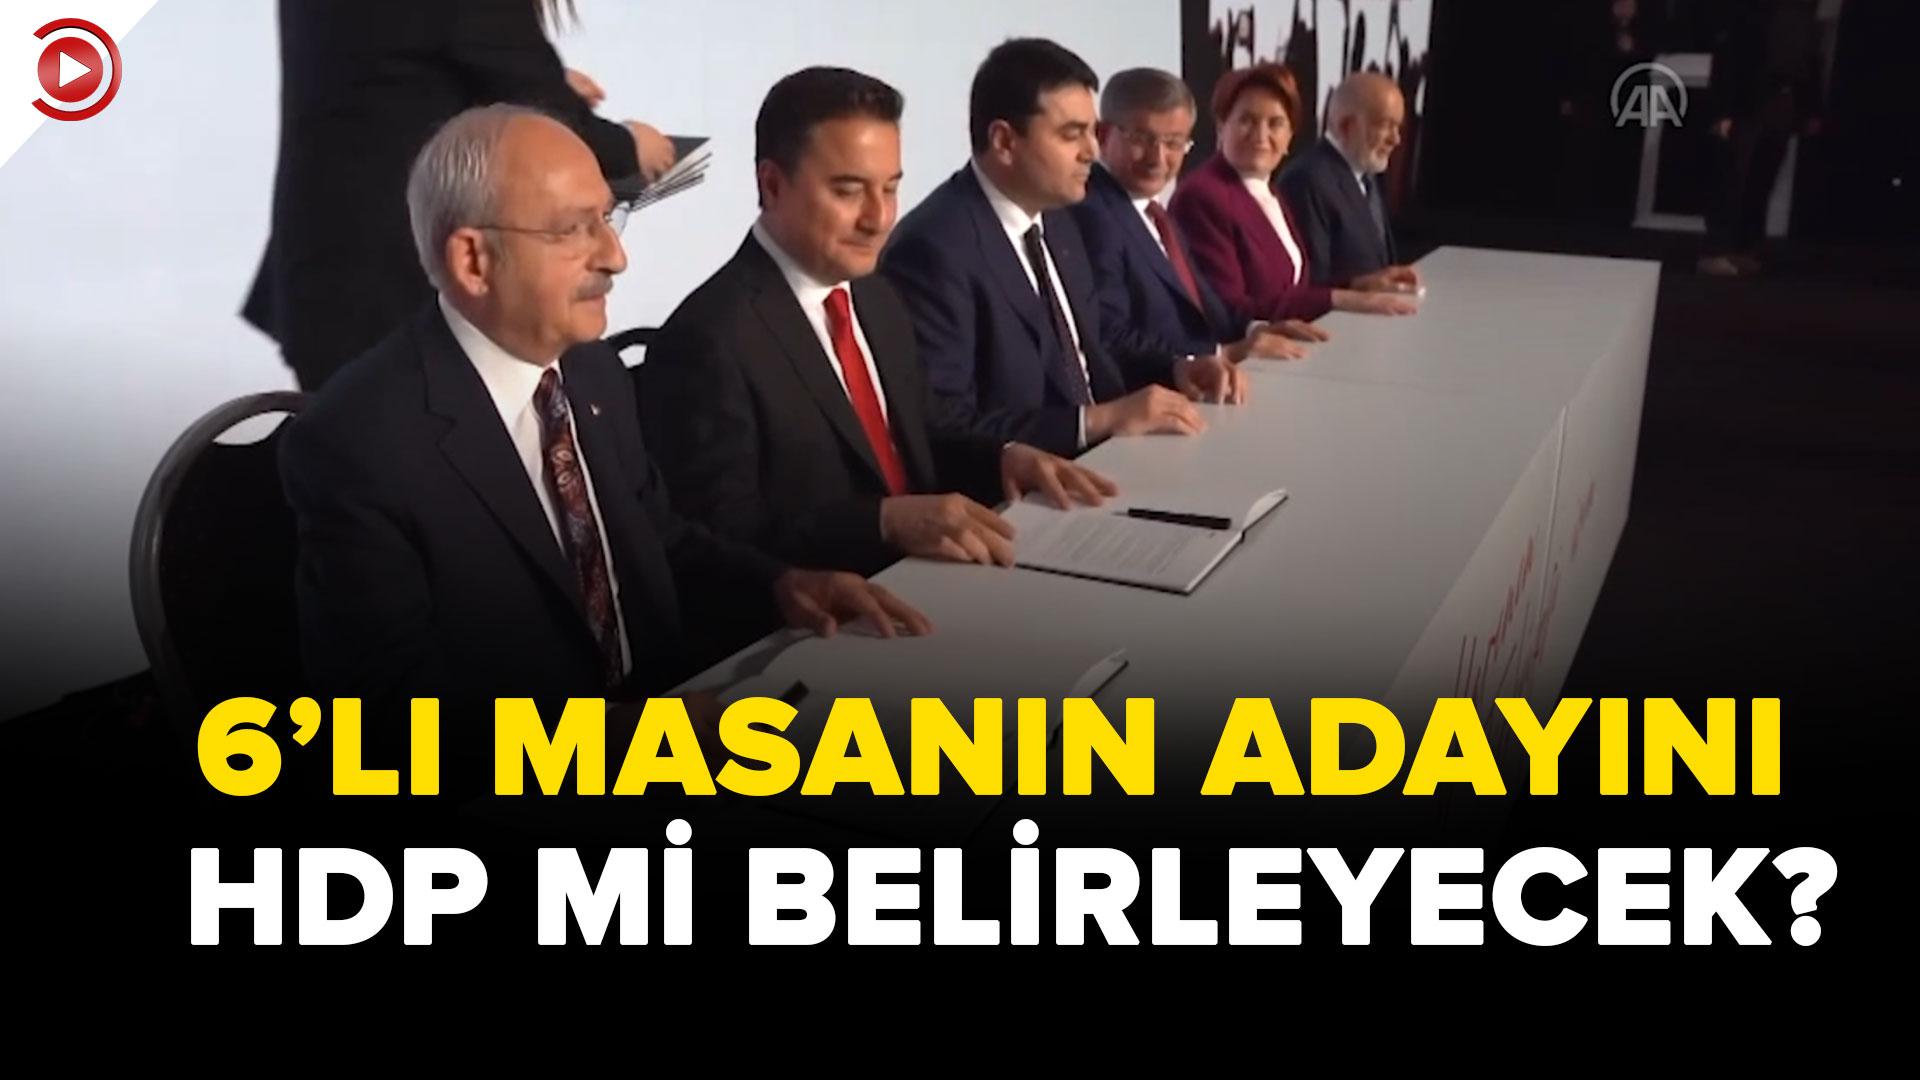 Muhalefetin adayını HDP mi belirleyecek?